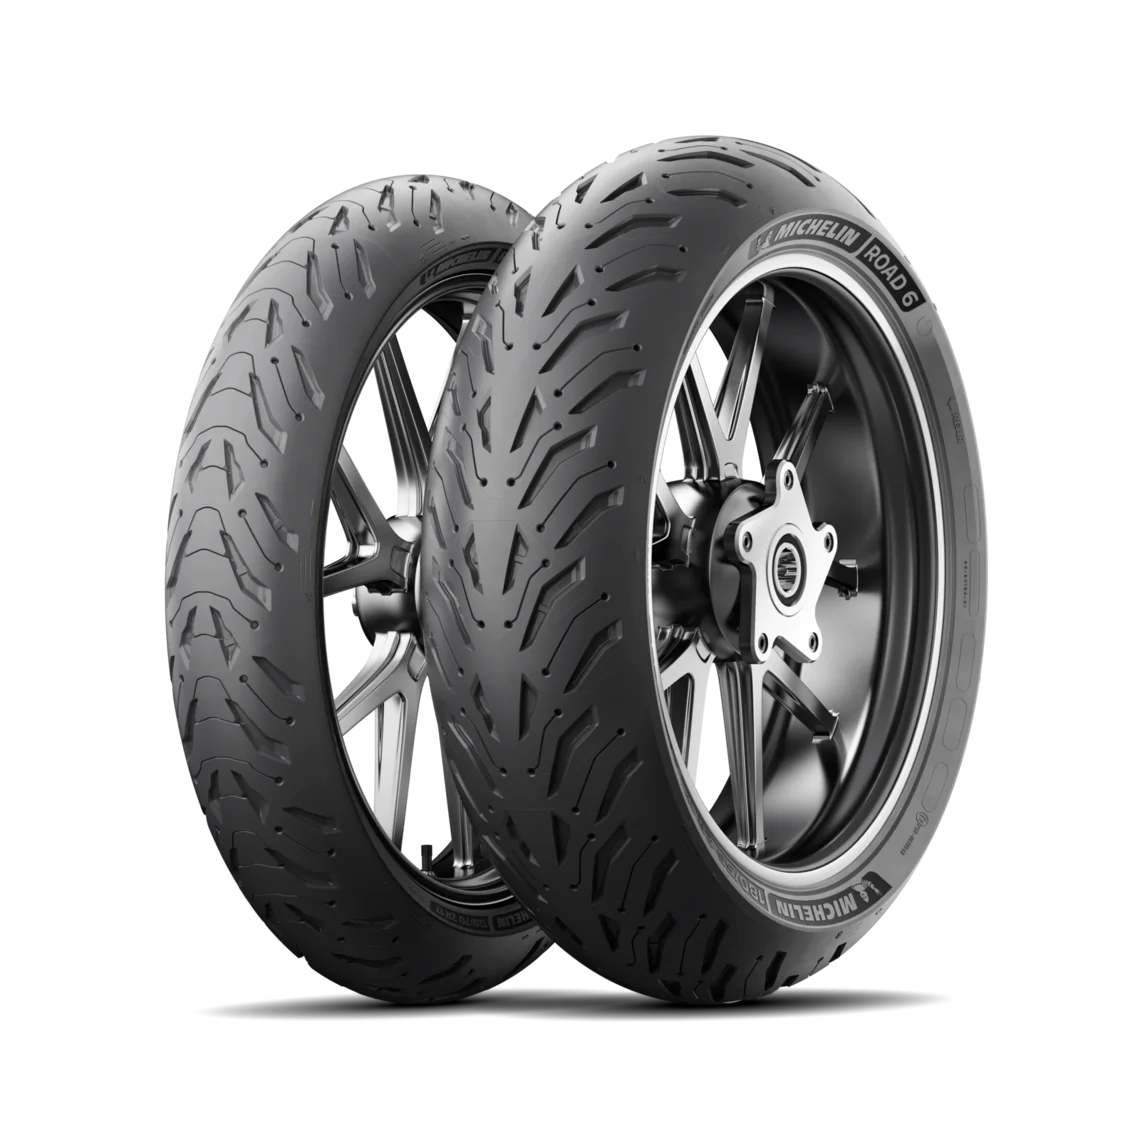 Michelin Michelin 120/70 ZR17 58W ROAD 6 pneumatici nuovi Estivo 